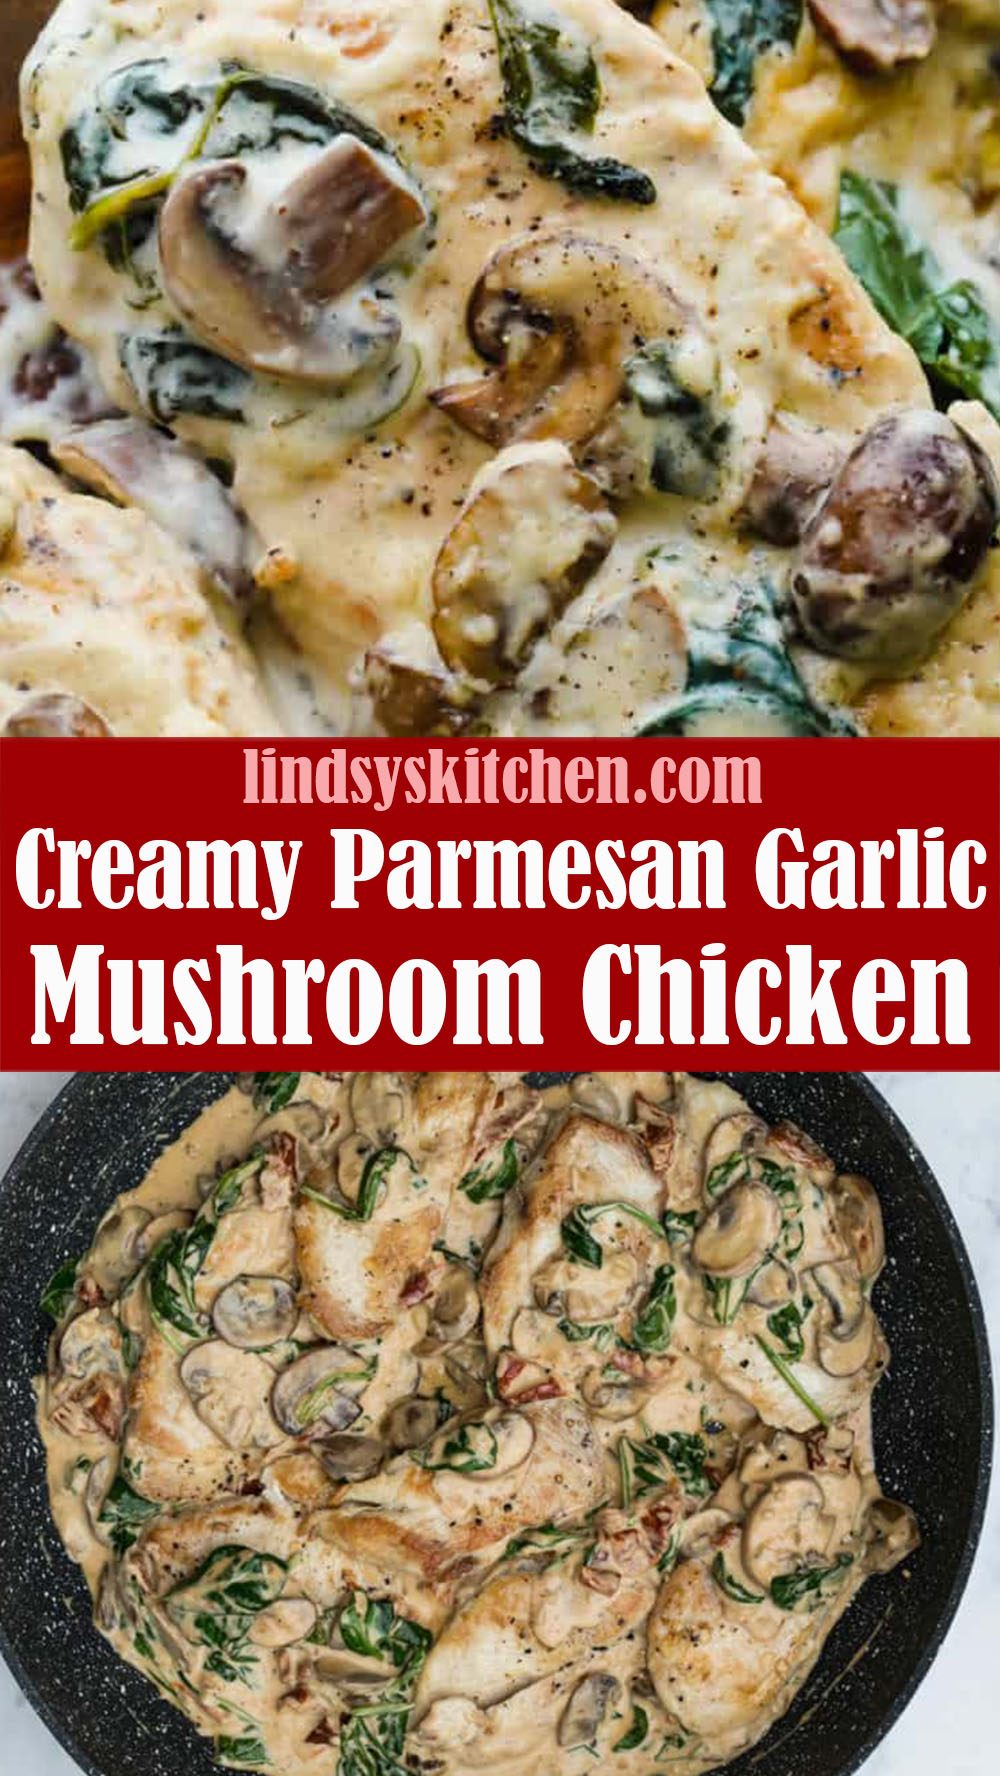 Creamy Parmesan Garlic Mushroom Chicken